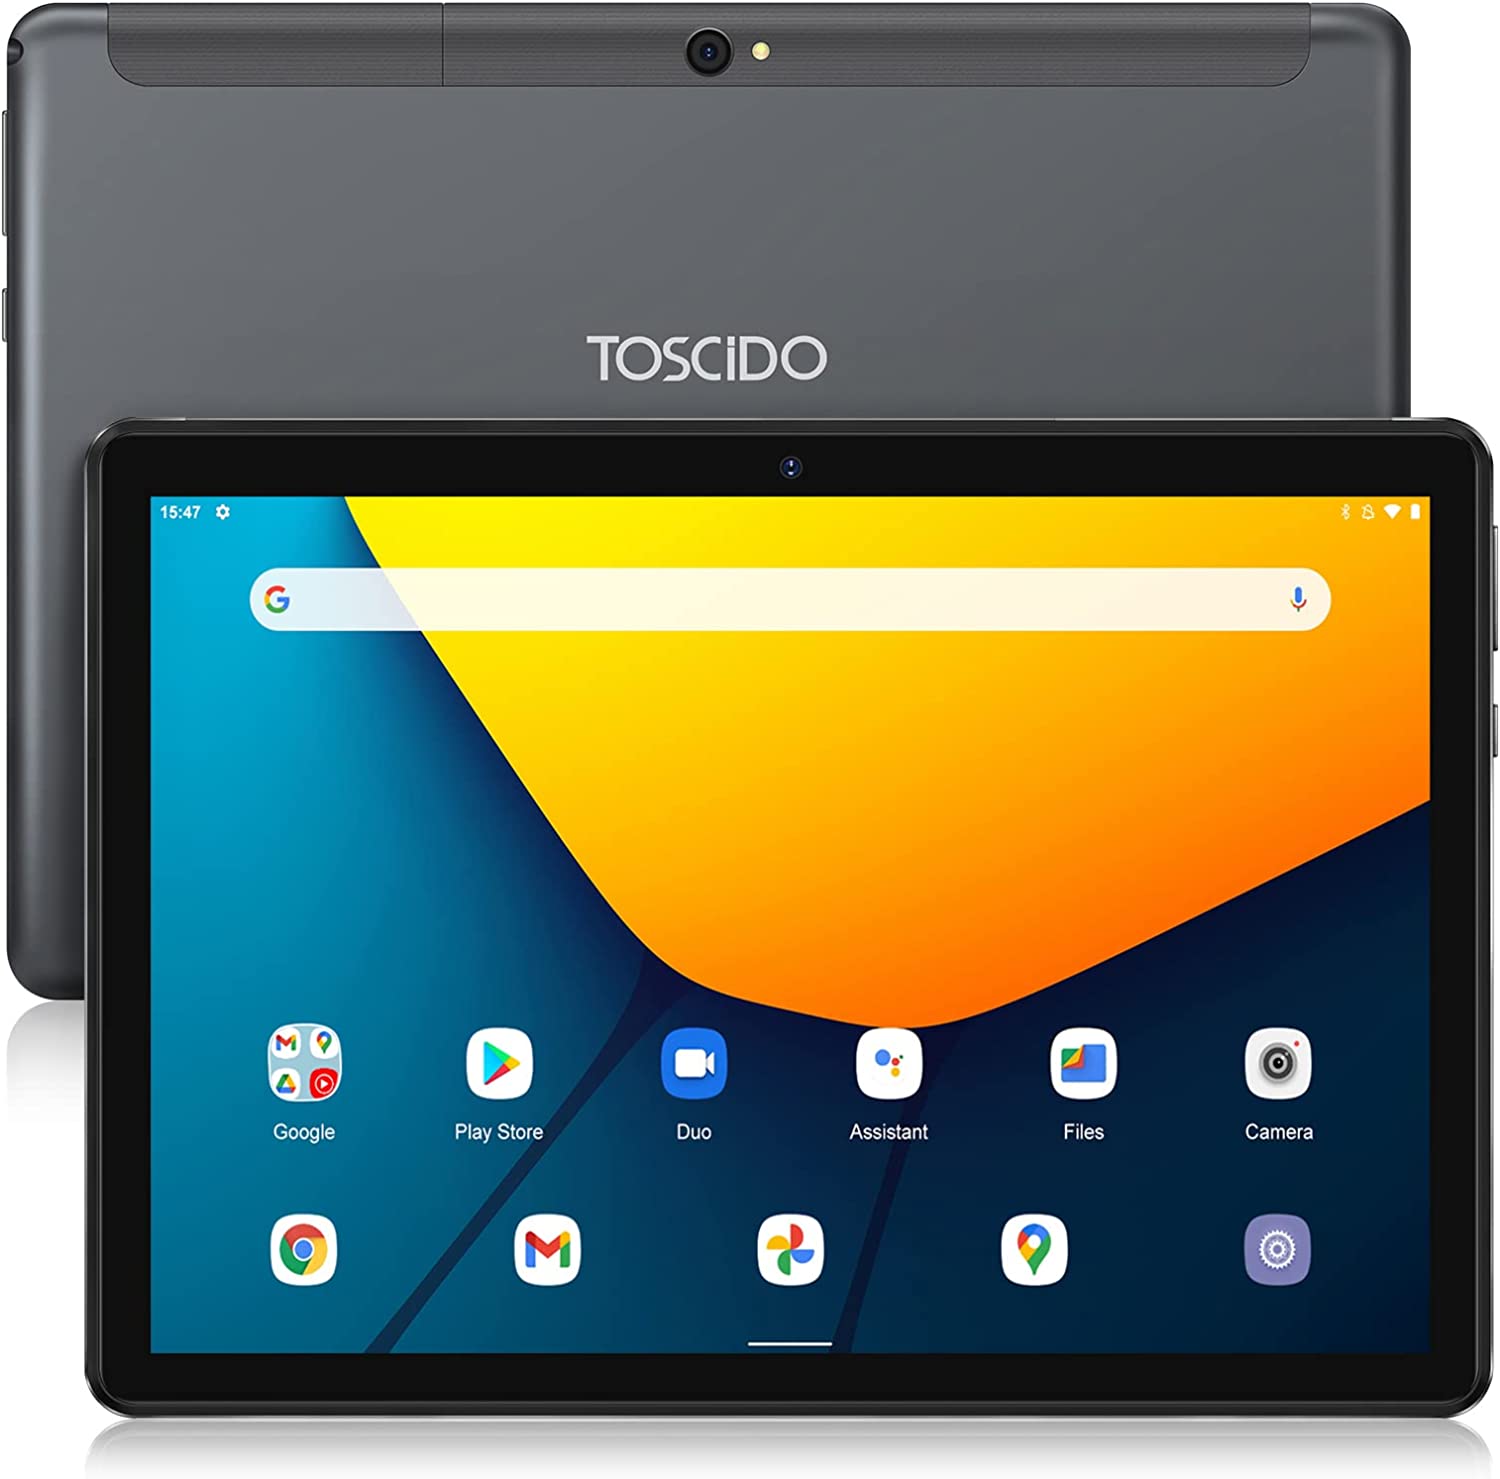 Tablet Android da 10.1 pollici a 54,99 euro: INCREDIBILE su